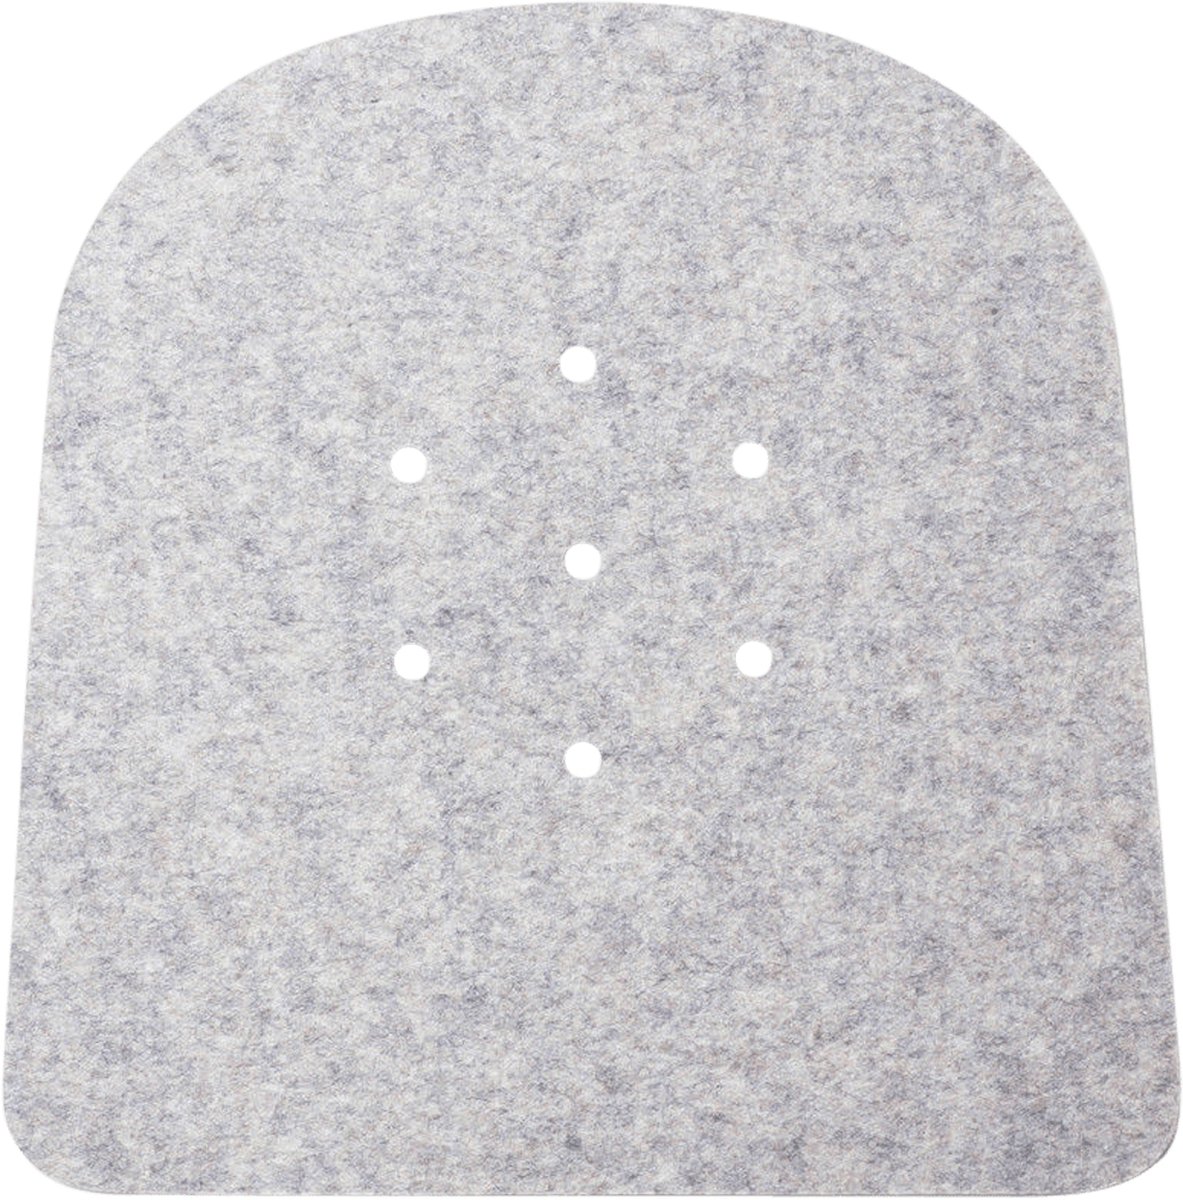 5 mm gaatjes (anti-slip) seatpad voor Tolix stoel | Lichtgrijs 07